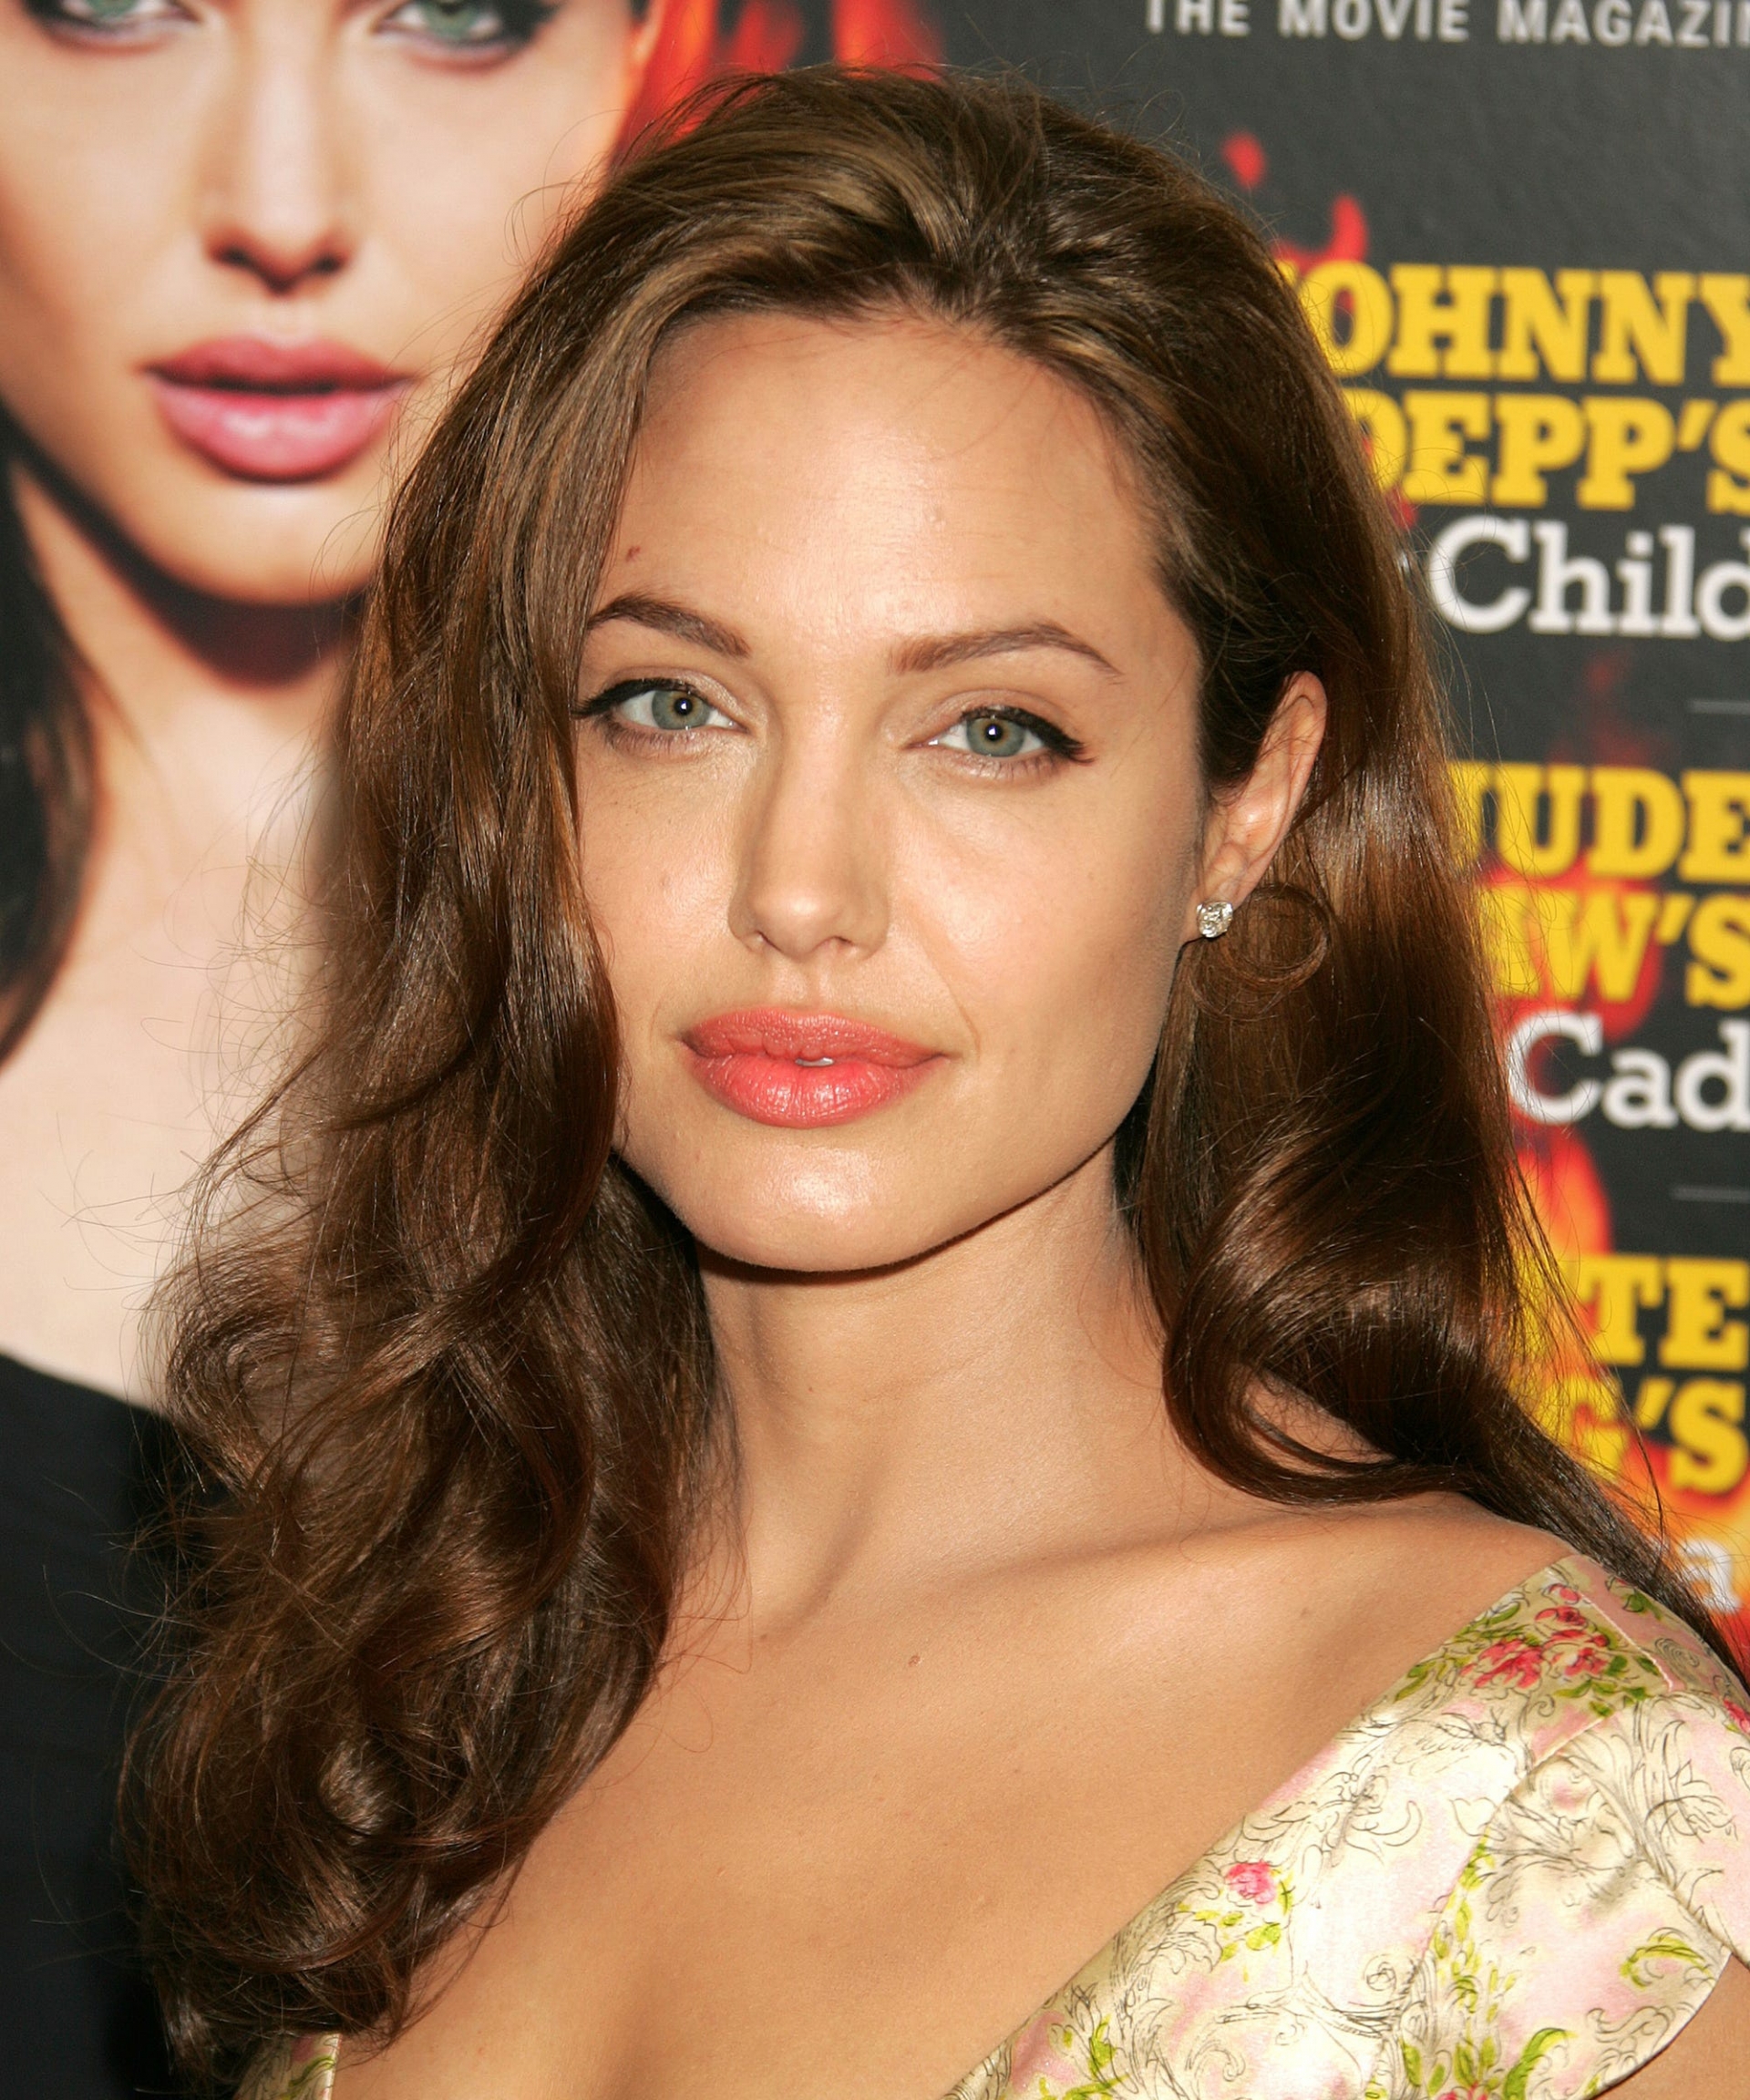 Nhan sắc đẹp không tỳ vết của Angelina Jolie theo thời gian - Ảnh 16